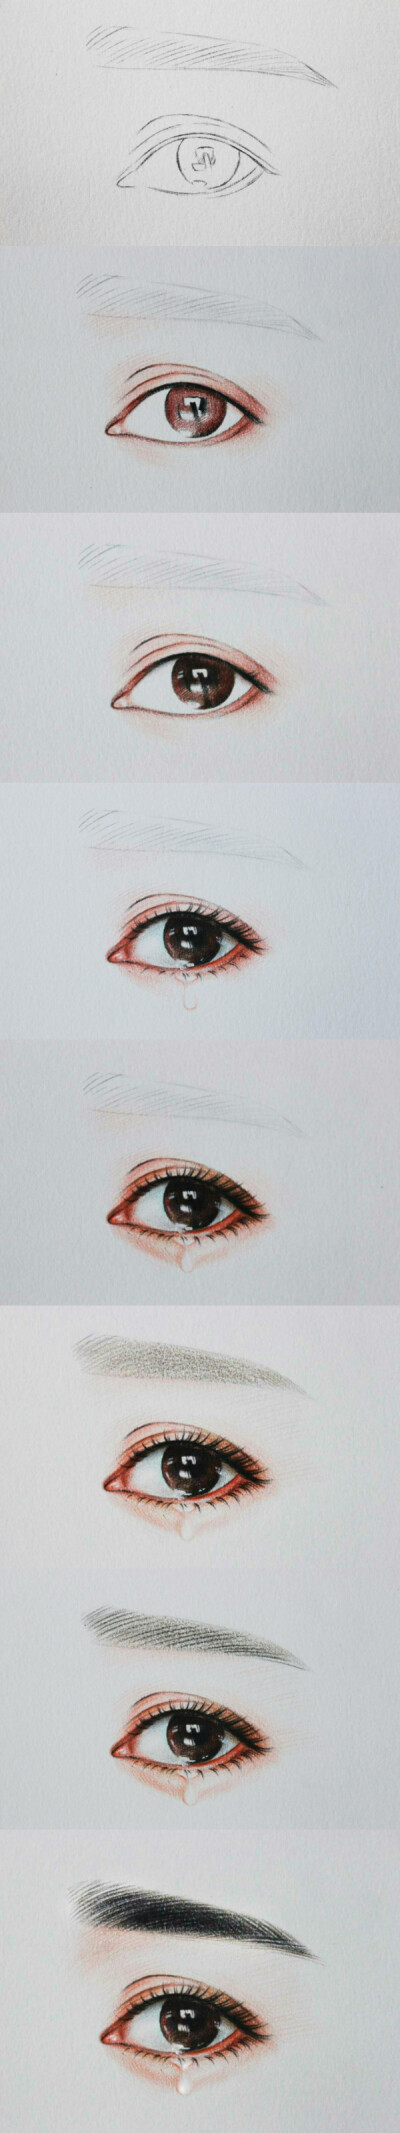 彩铅手绘眼睛的参考画法